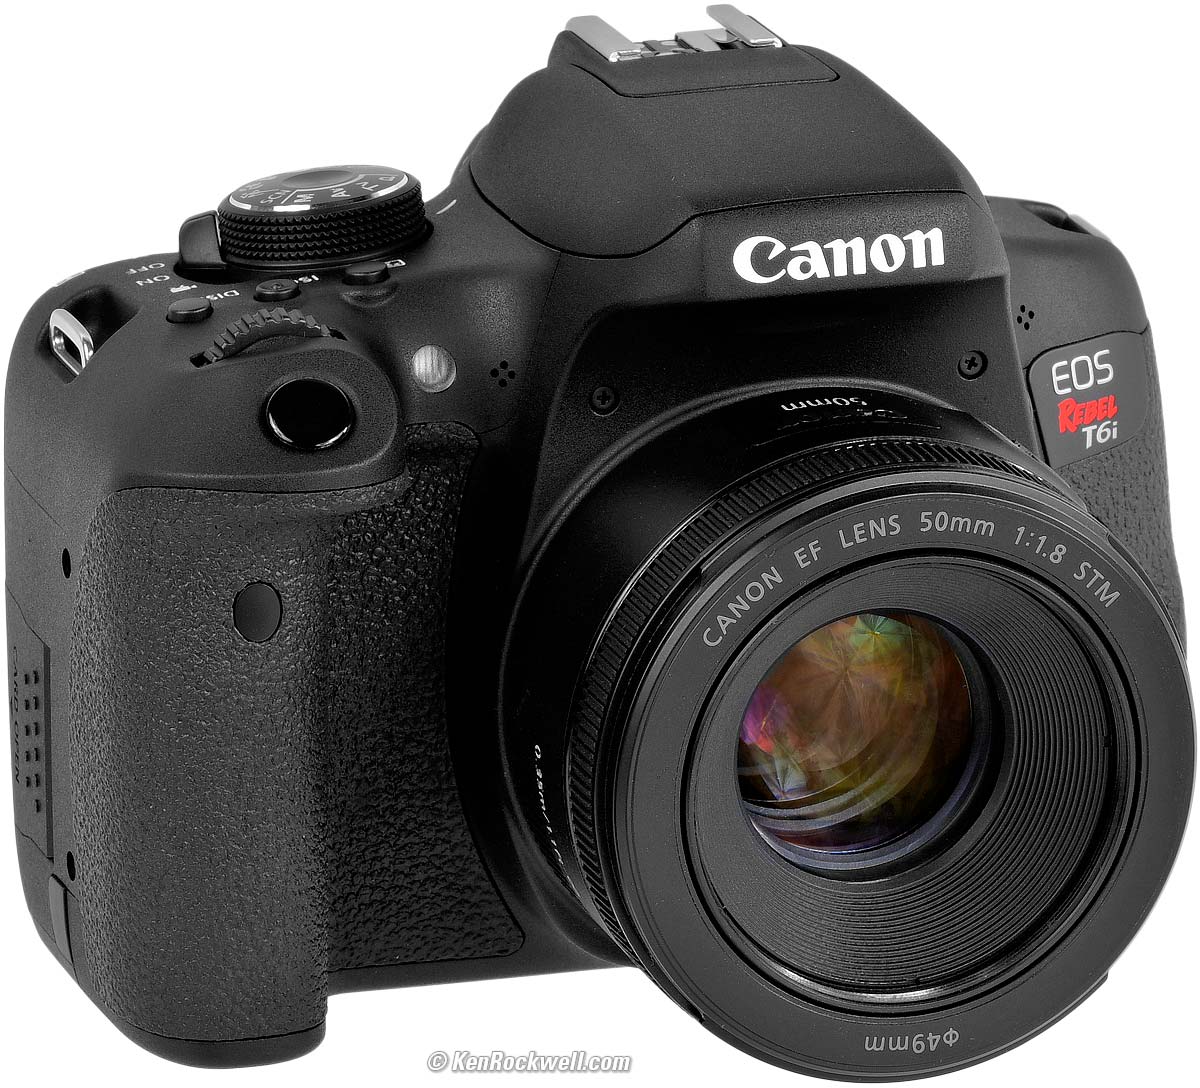 mixer knal nog een keer Canon T6i (EOS 750D) Review